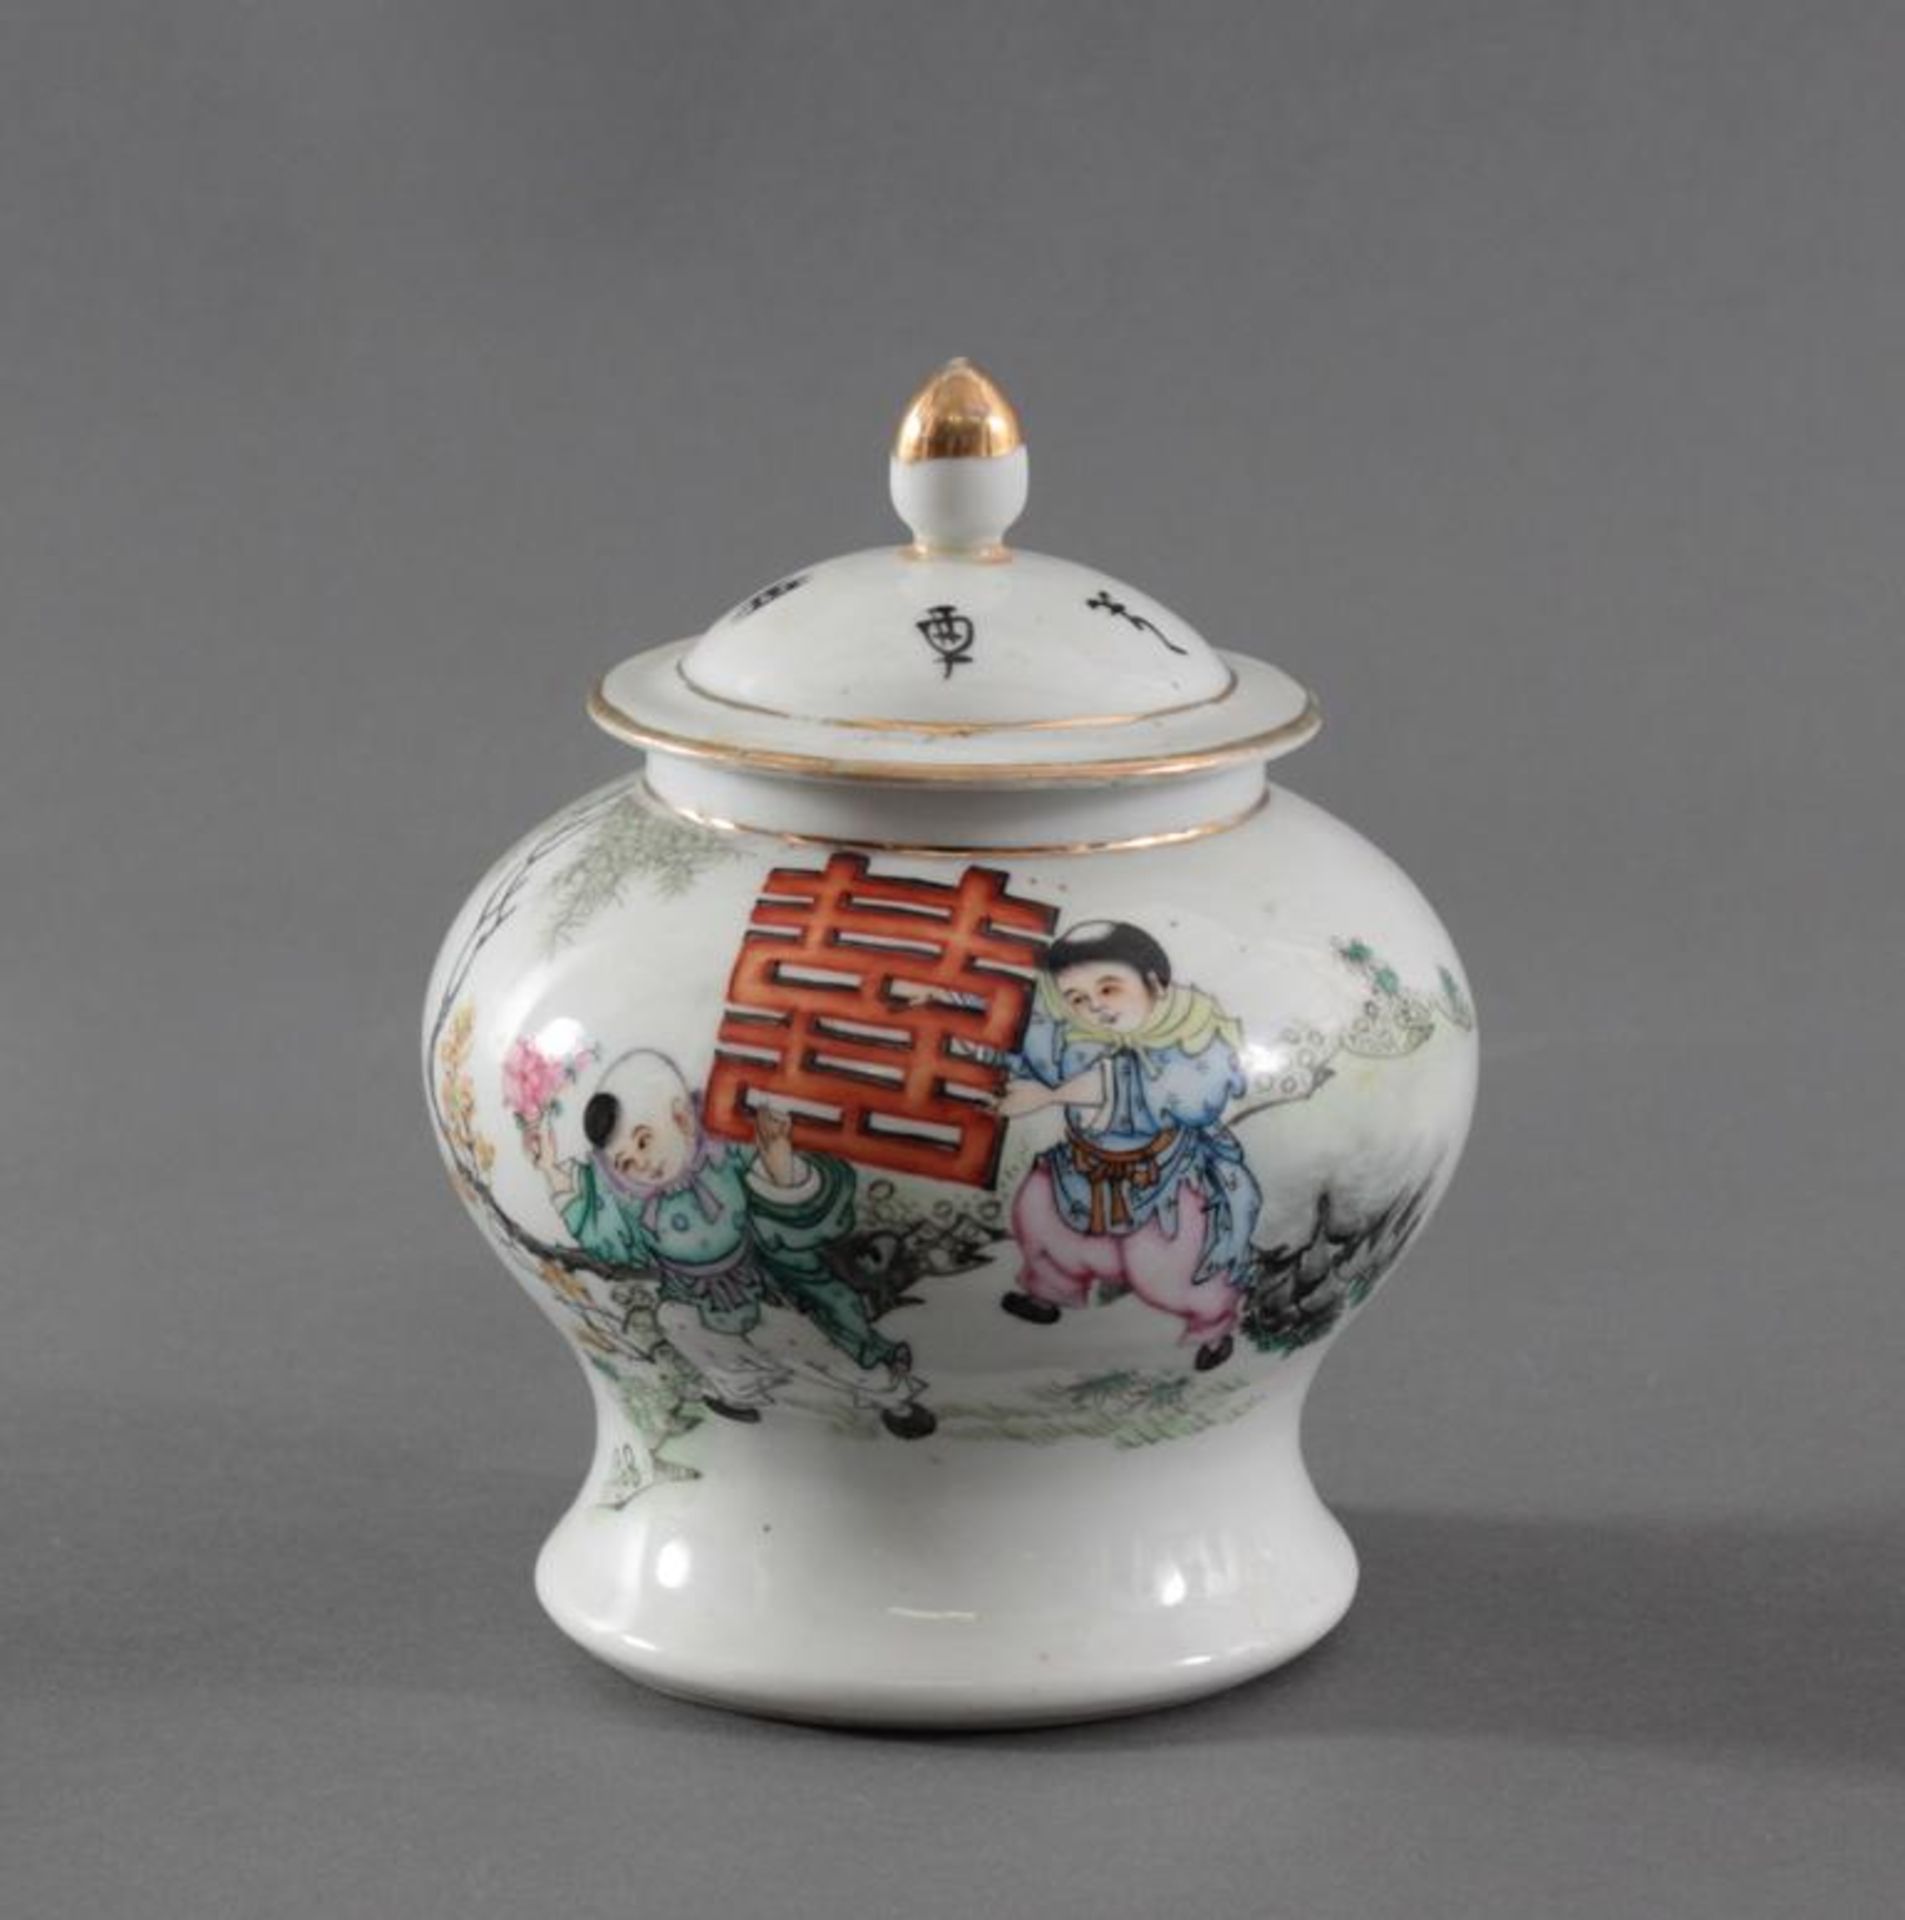 Chinesisches Deckelgefäß Kuang-Hsu Periode 1875-1908Antikes Porzellan Deckelgefäß mit umlaufend